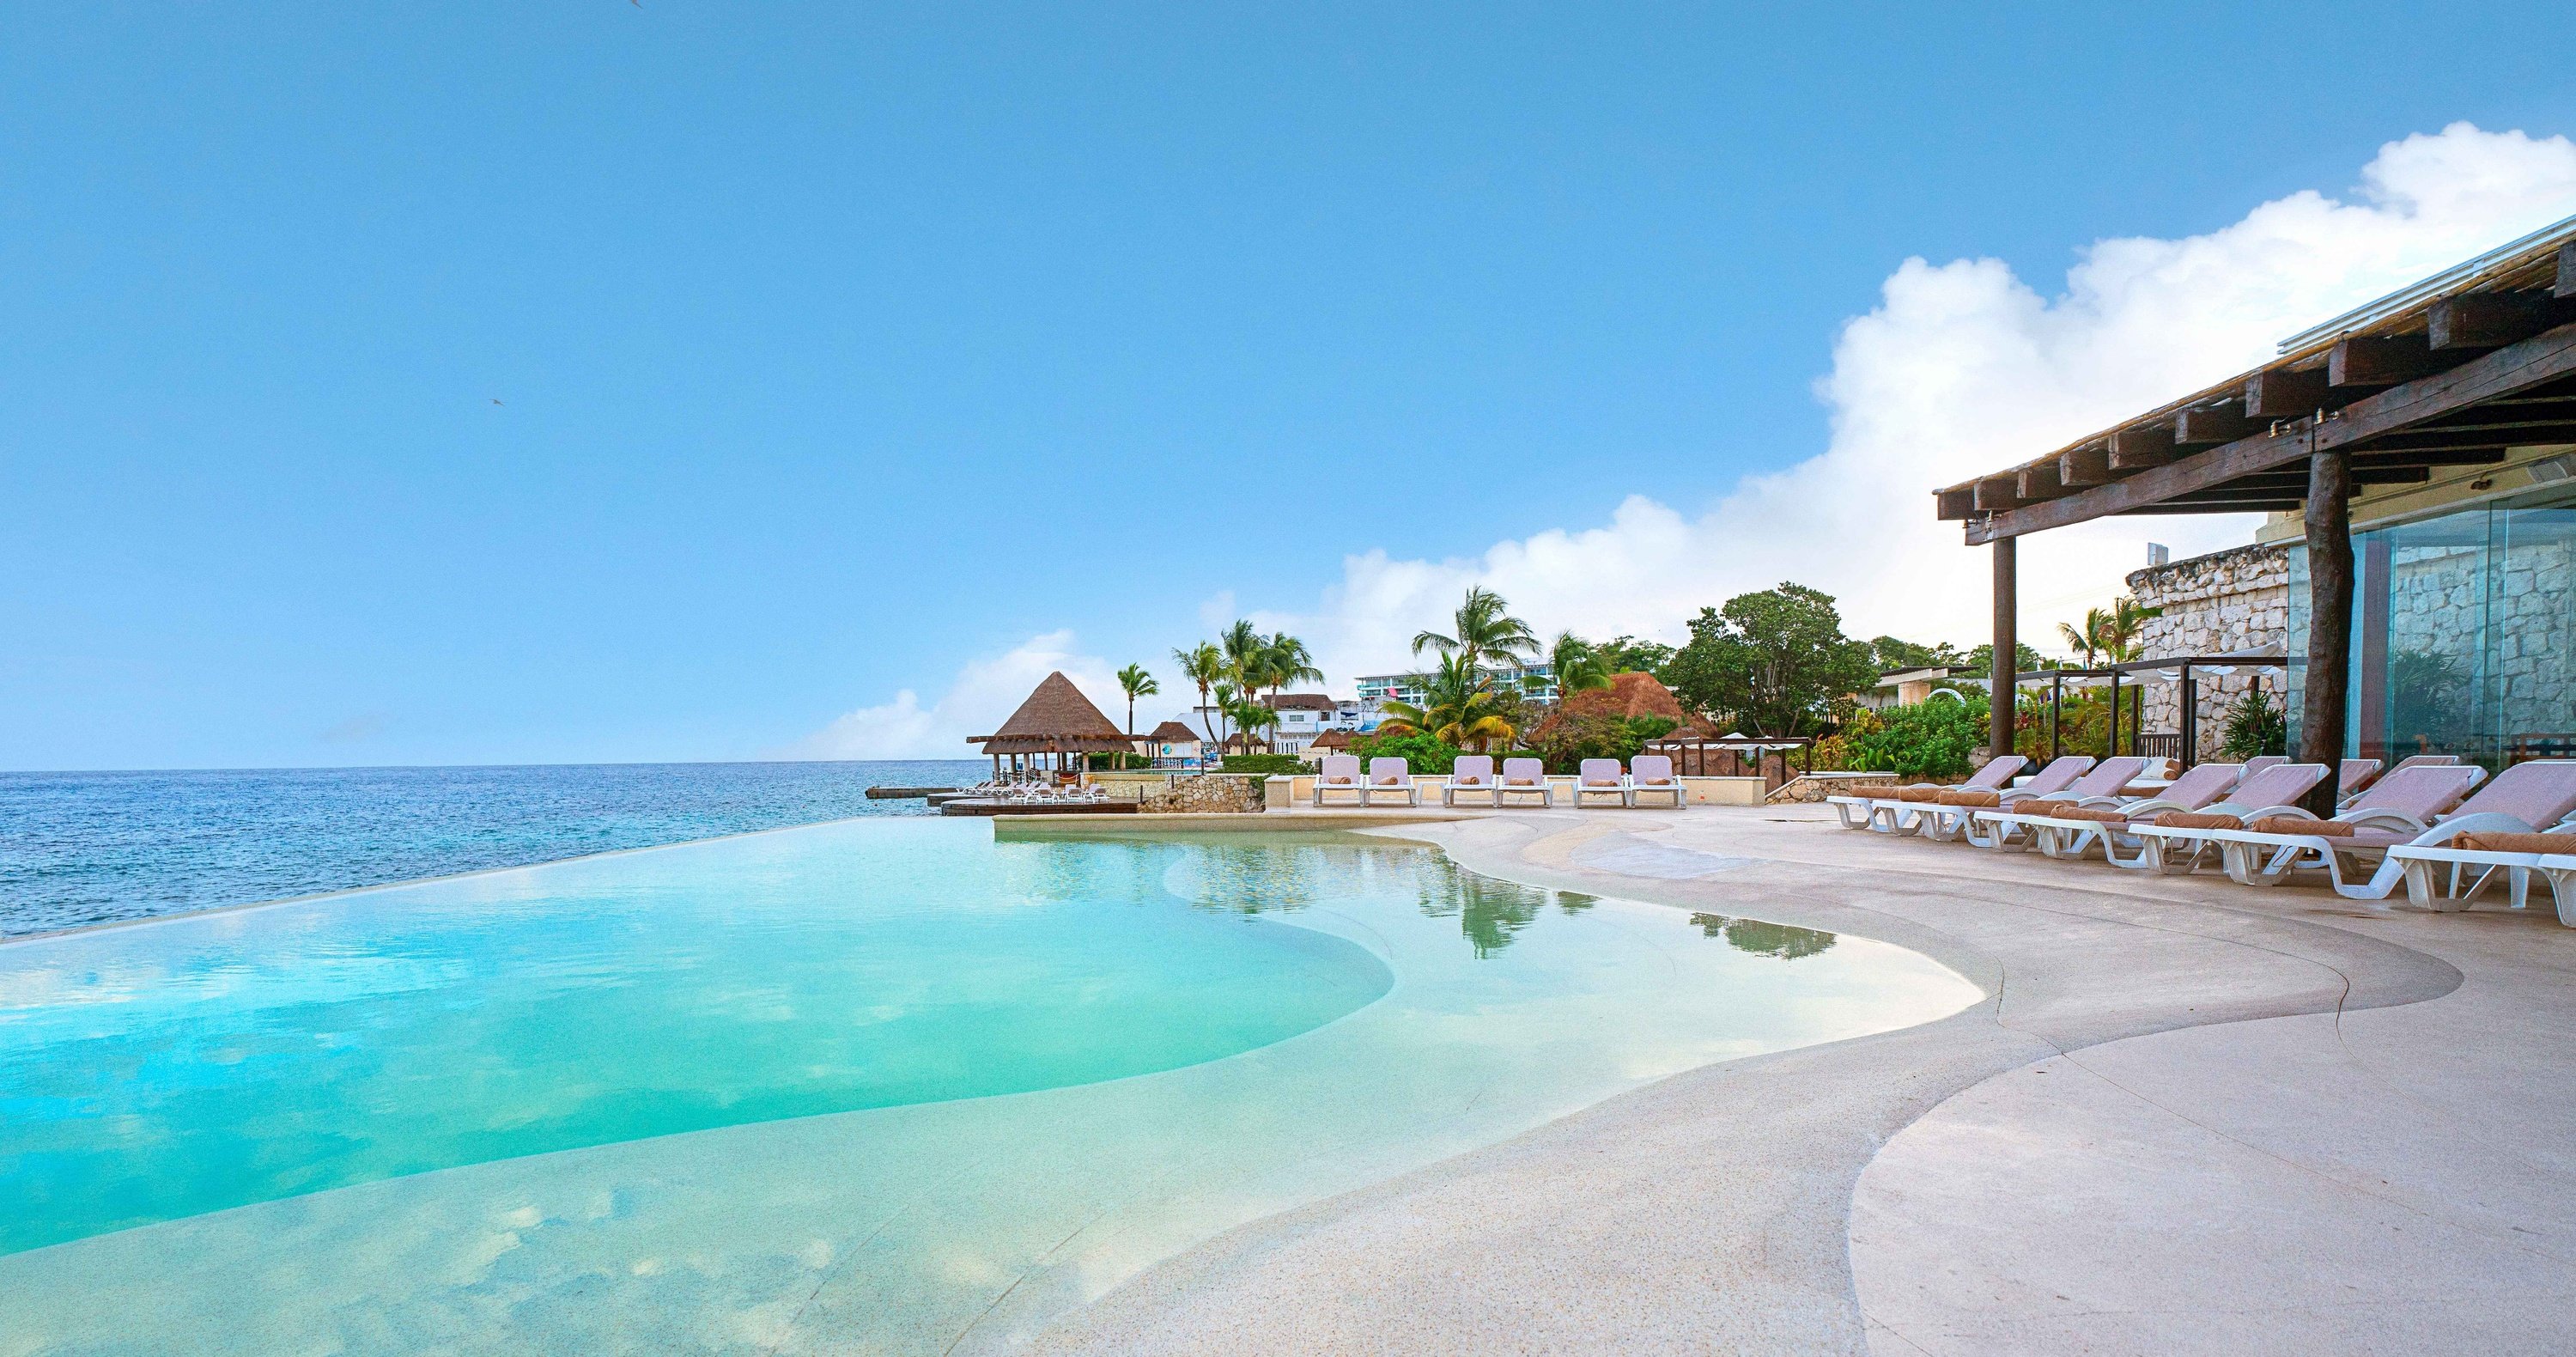 Pareja en hamaca cerca de piscina infinity con vistas al mar en el Hotel Grand Park Royal Cozumel